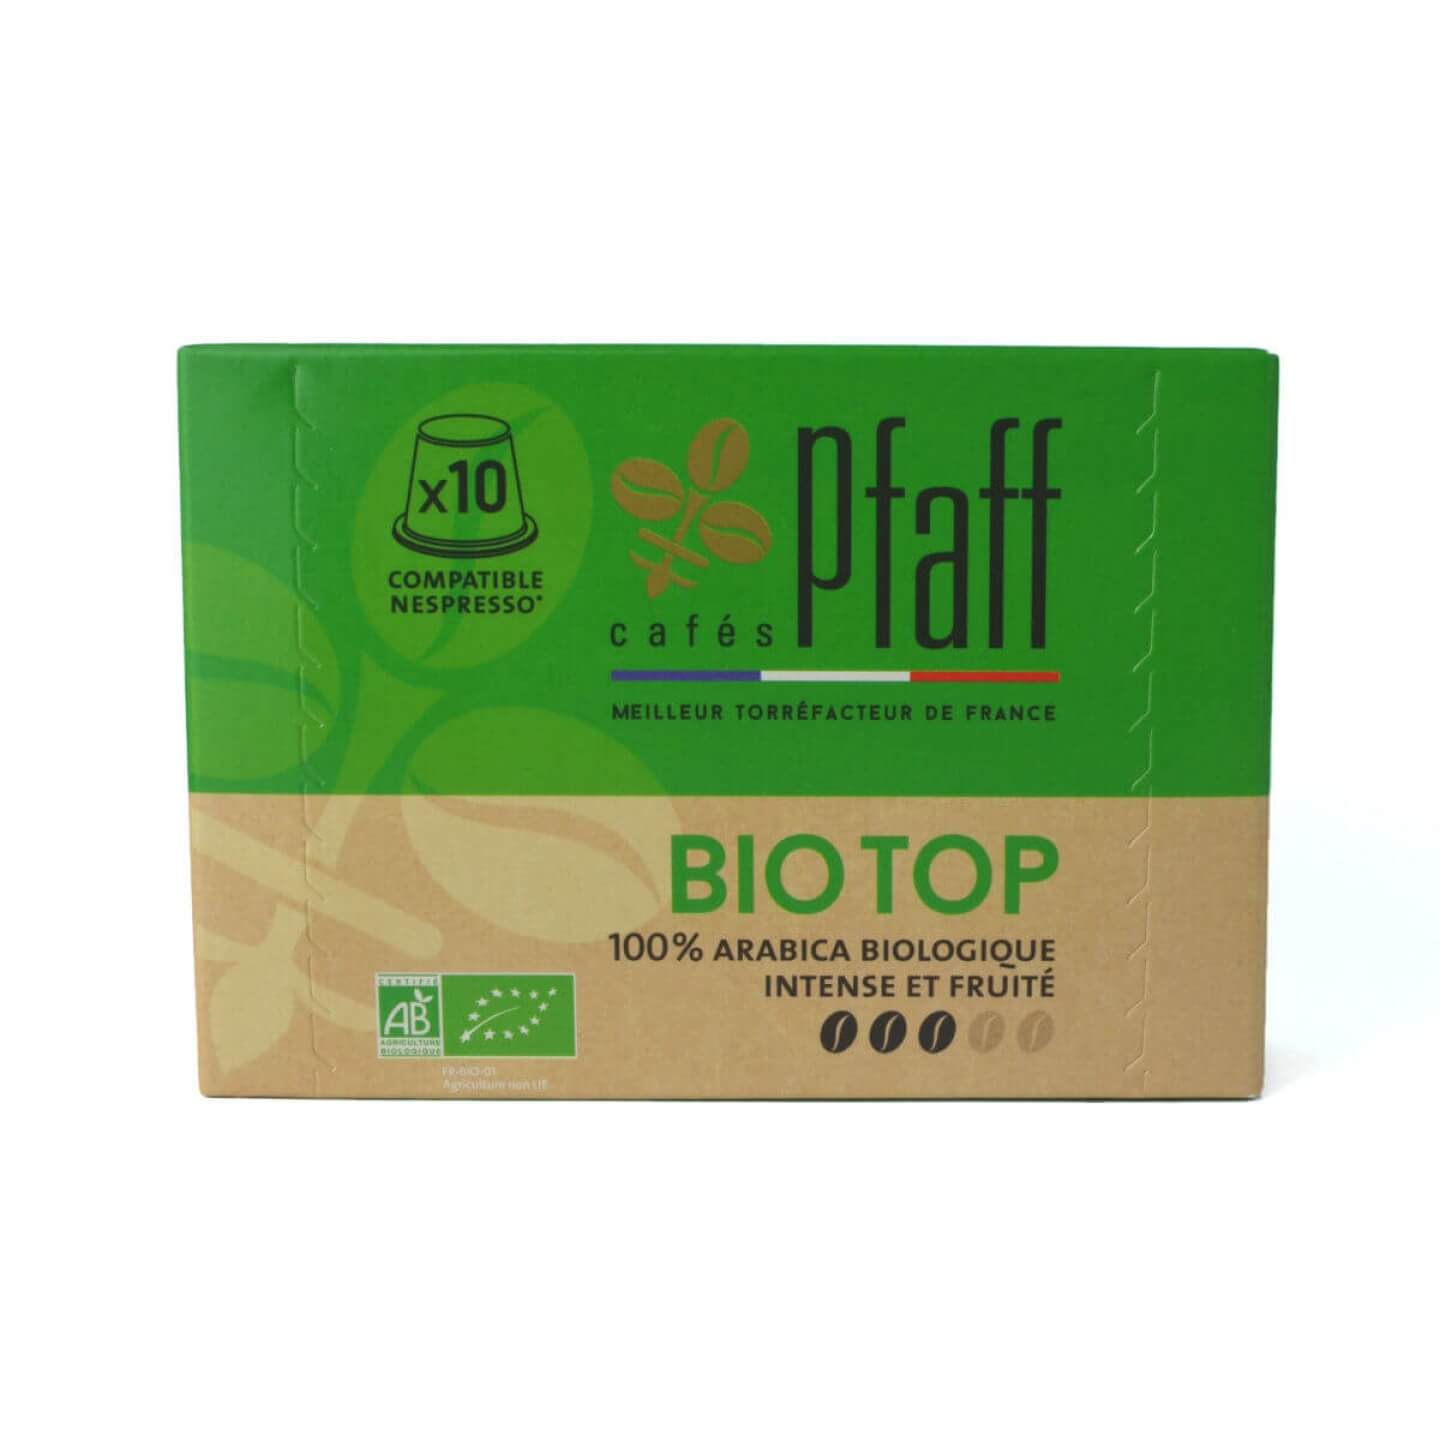 capsules bio top compatibles nespresso 1